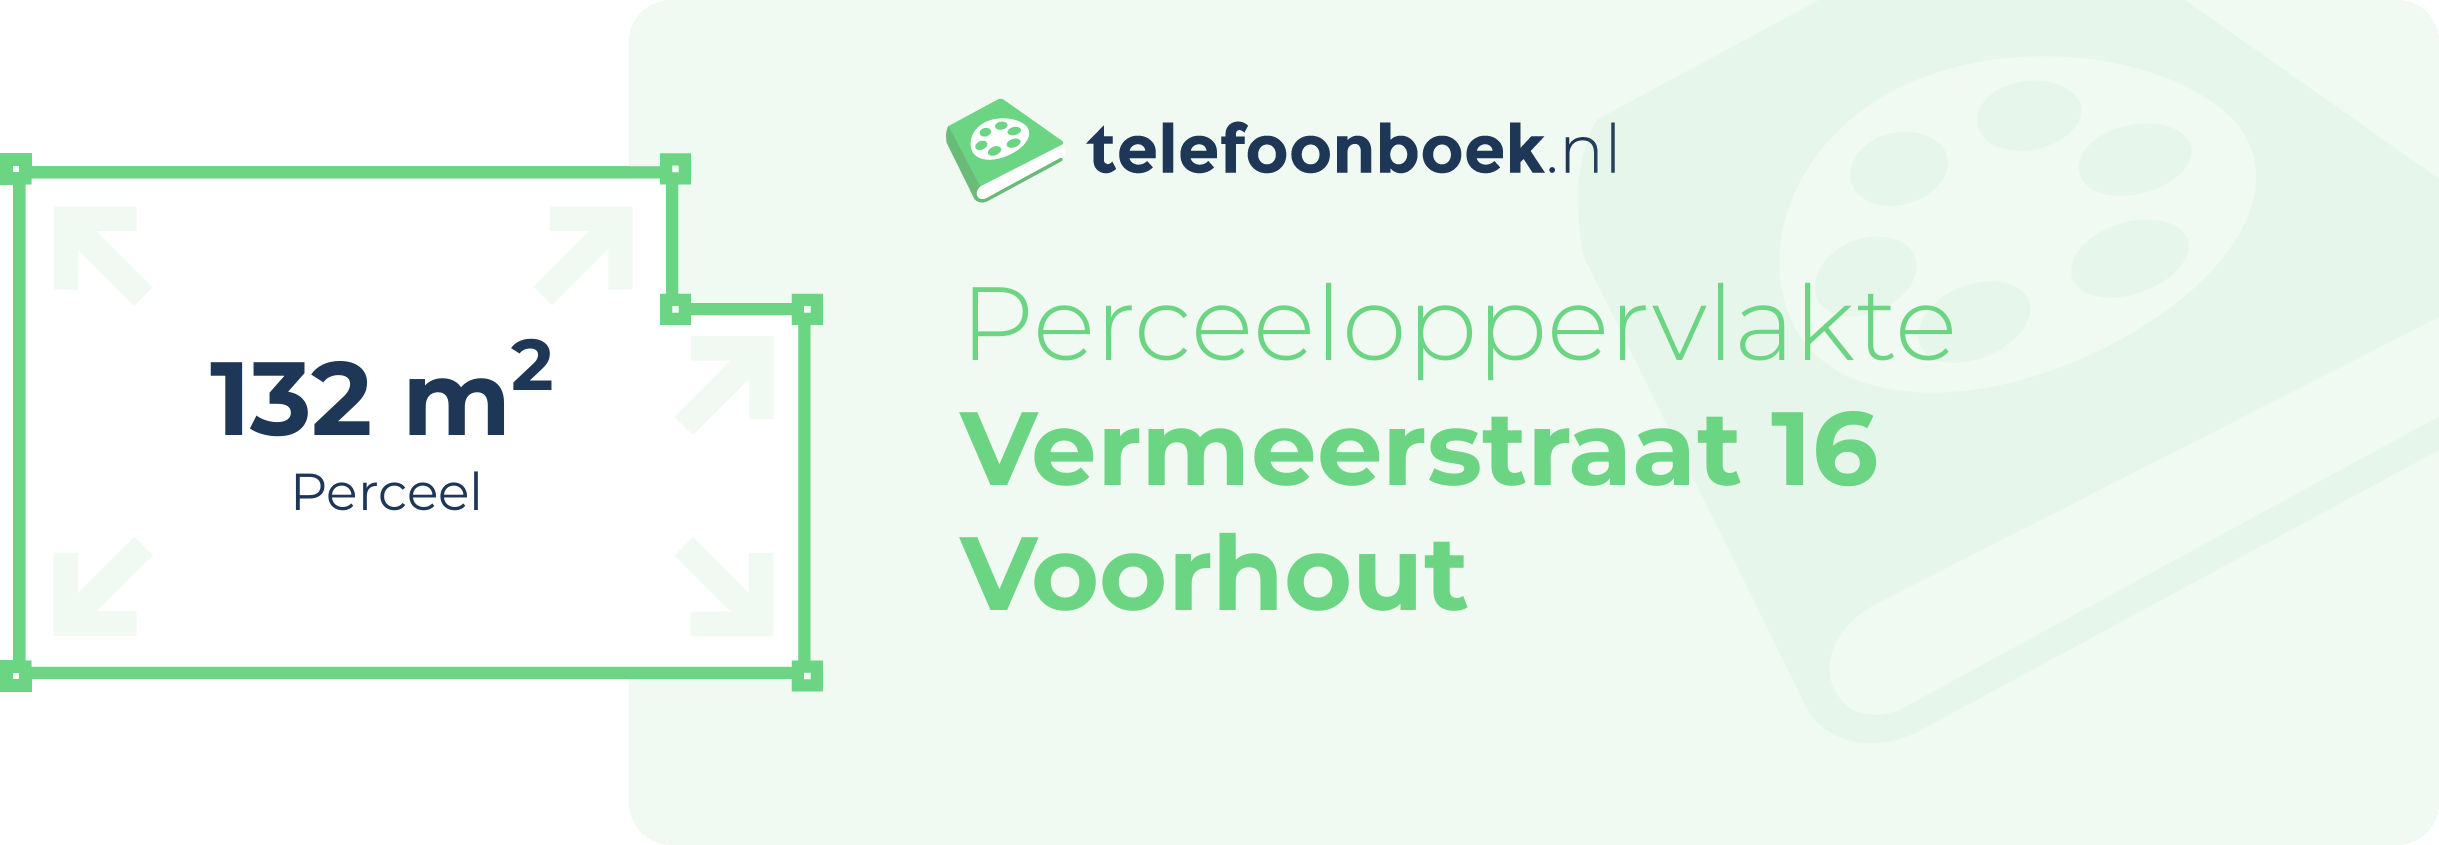 Perceeloppervlakte Vermeerstraat 16 Voorhout